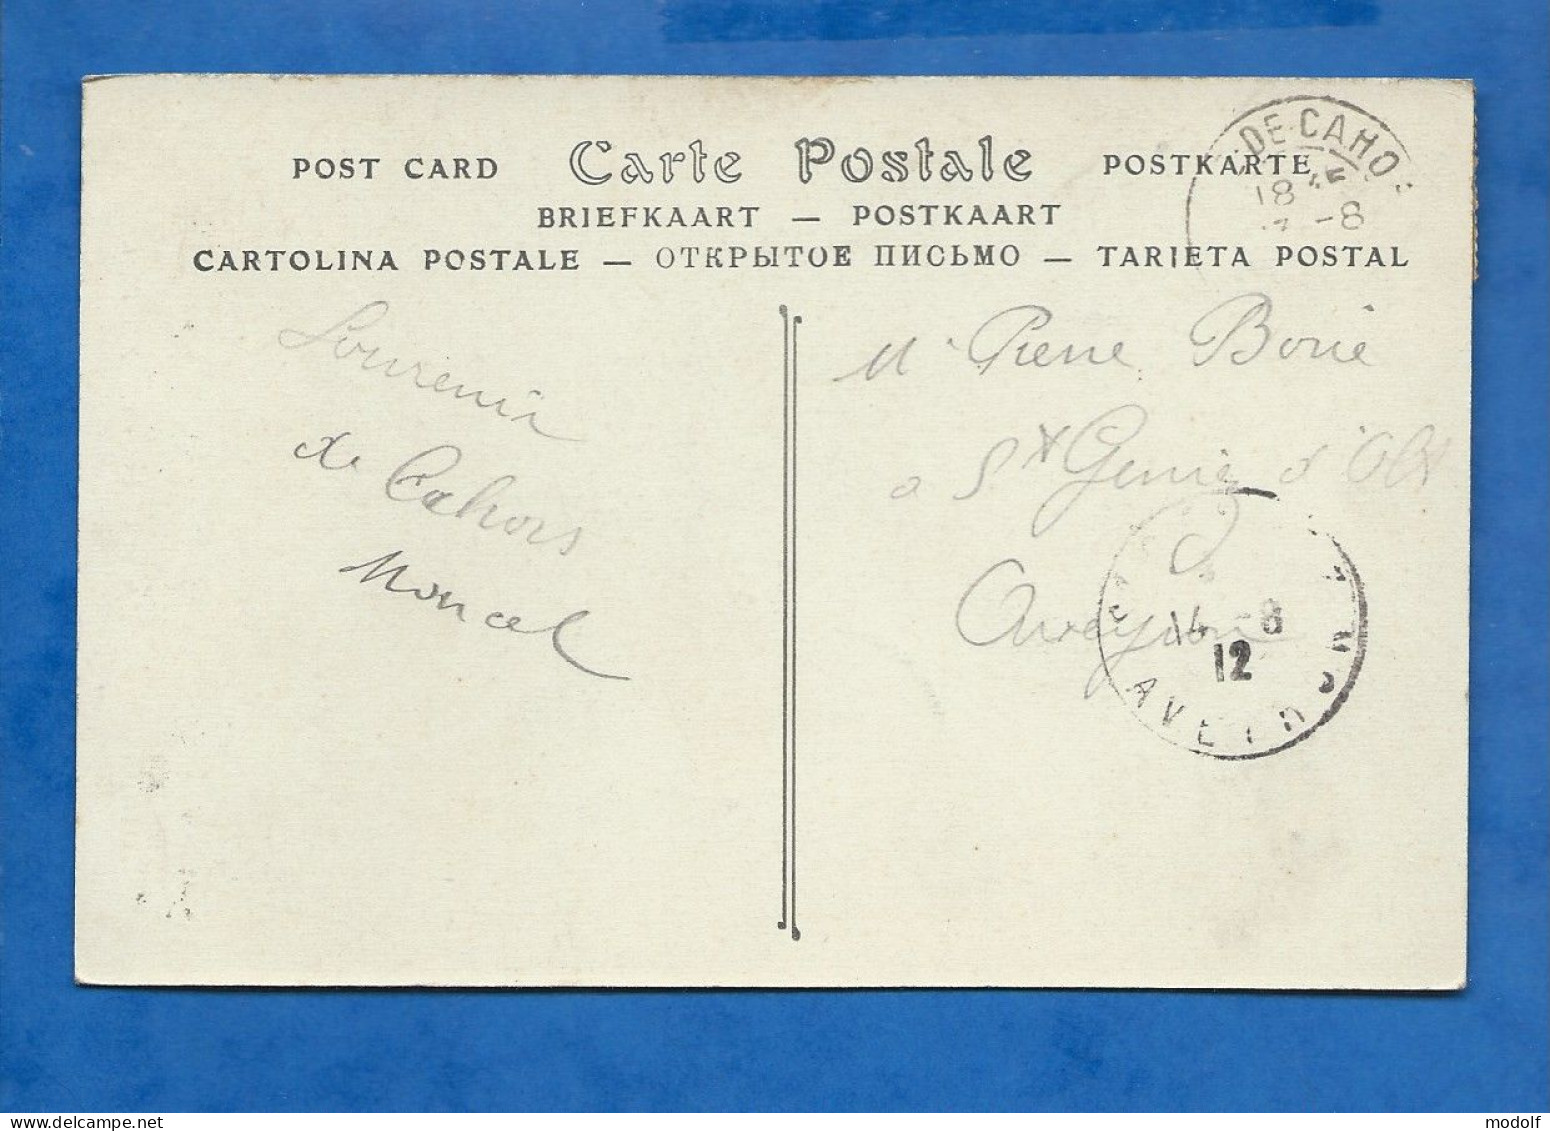 CPA - 46 - Cahors - Portail De La Cathédrale - Circulée En 1912 - Cahors